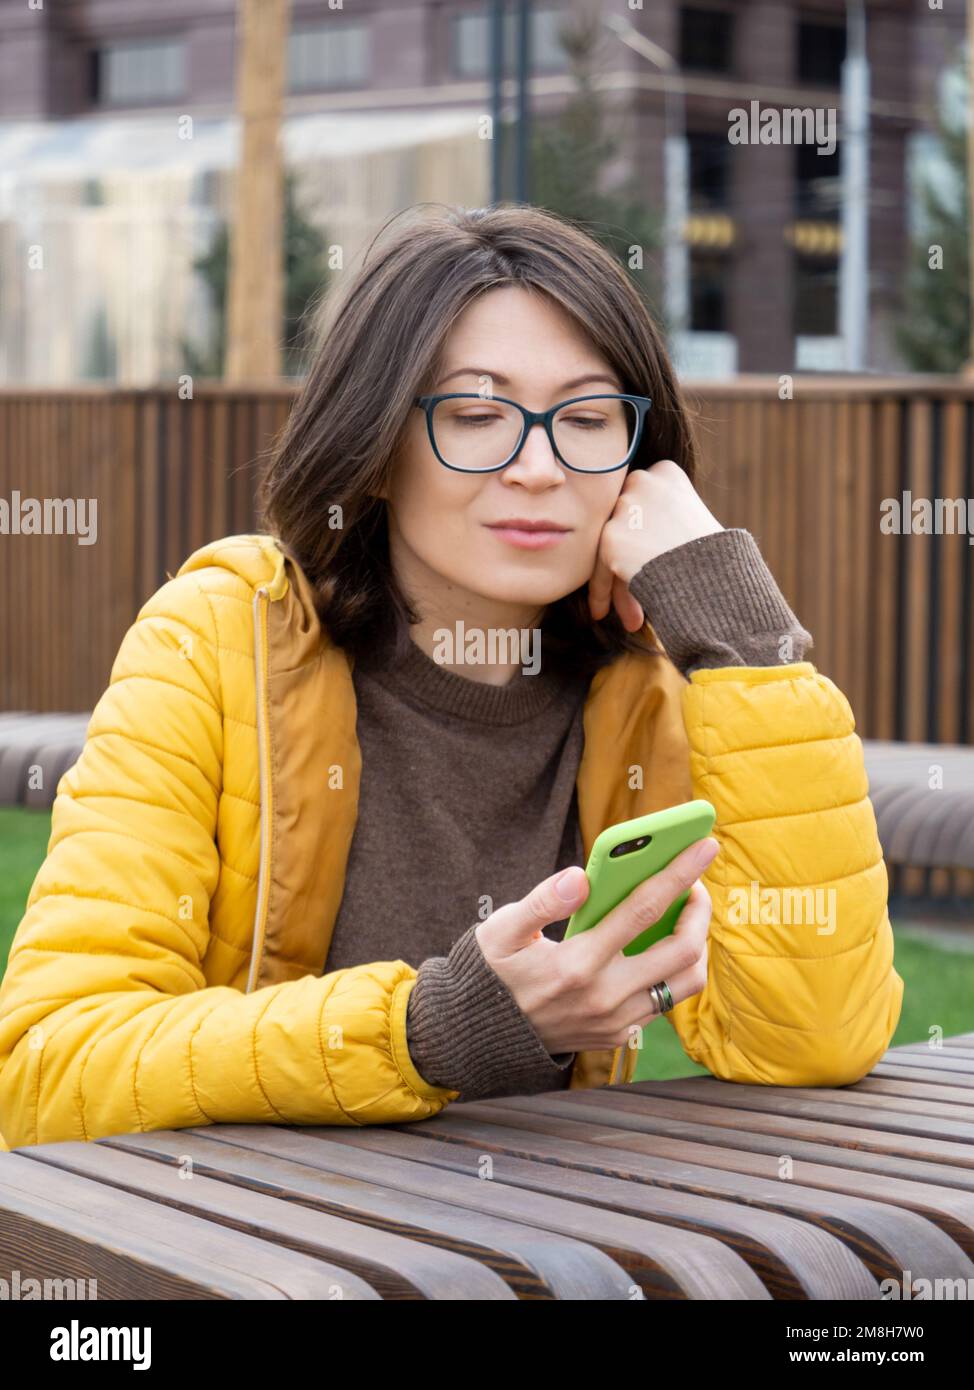 Eine Frau mit Brille liest Nachrichten oder Nachrichten auf ihrem Smartphone. Einsatz von Wireless-Technologien im Freien. Urbaner Lebensstil. Stockfoto